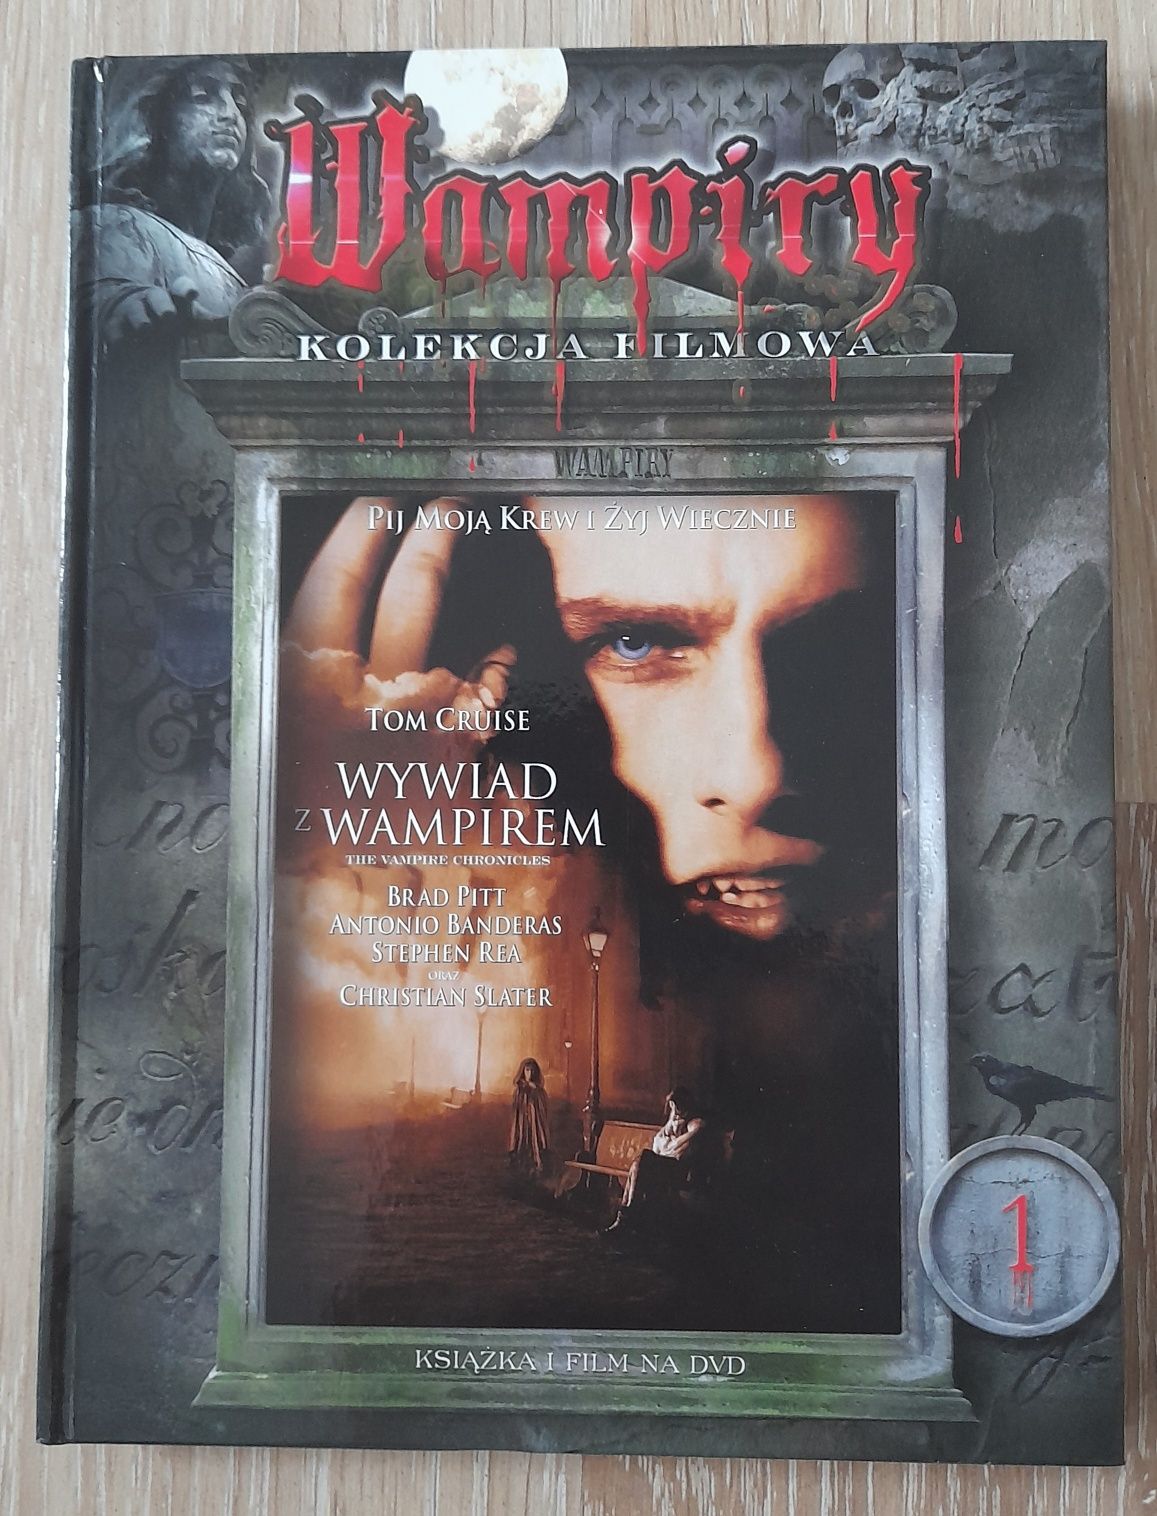 Wywiad z wampirem - wampiry kolekcja DVD